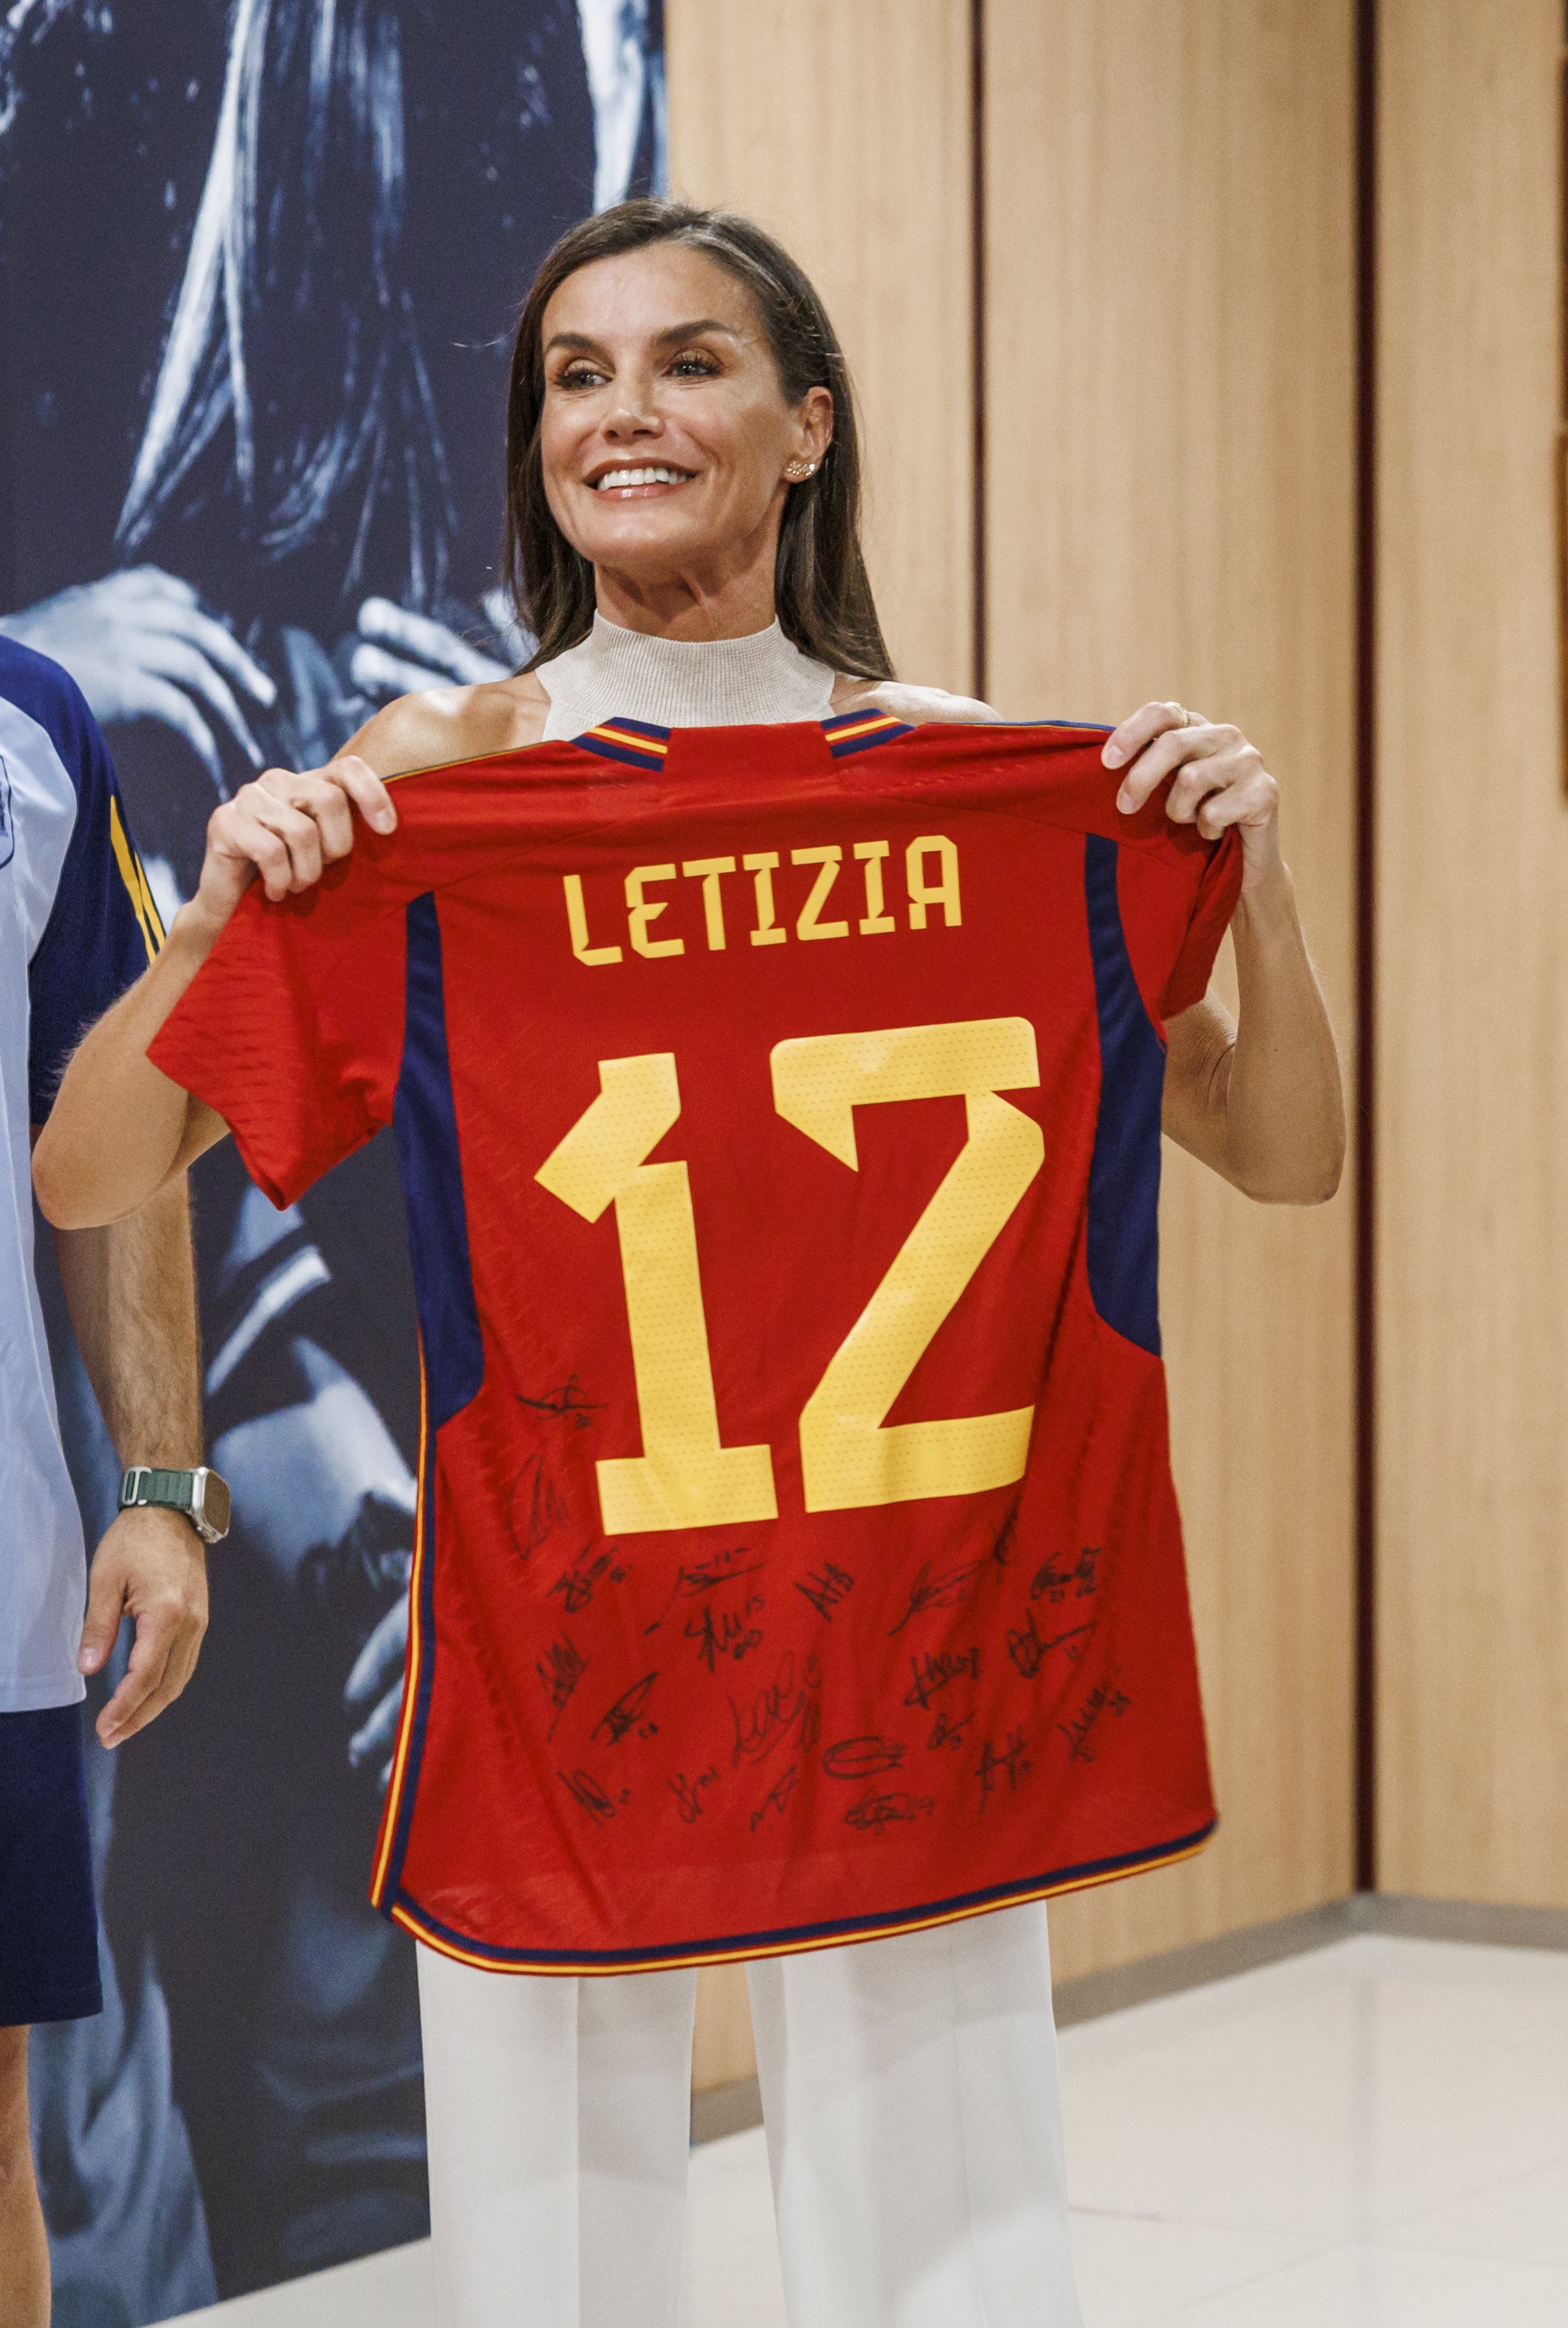 Per què Letizia escriu el seu nom amb 'Z'? Sorprenent revelació el dia que fa 51 anys